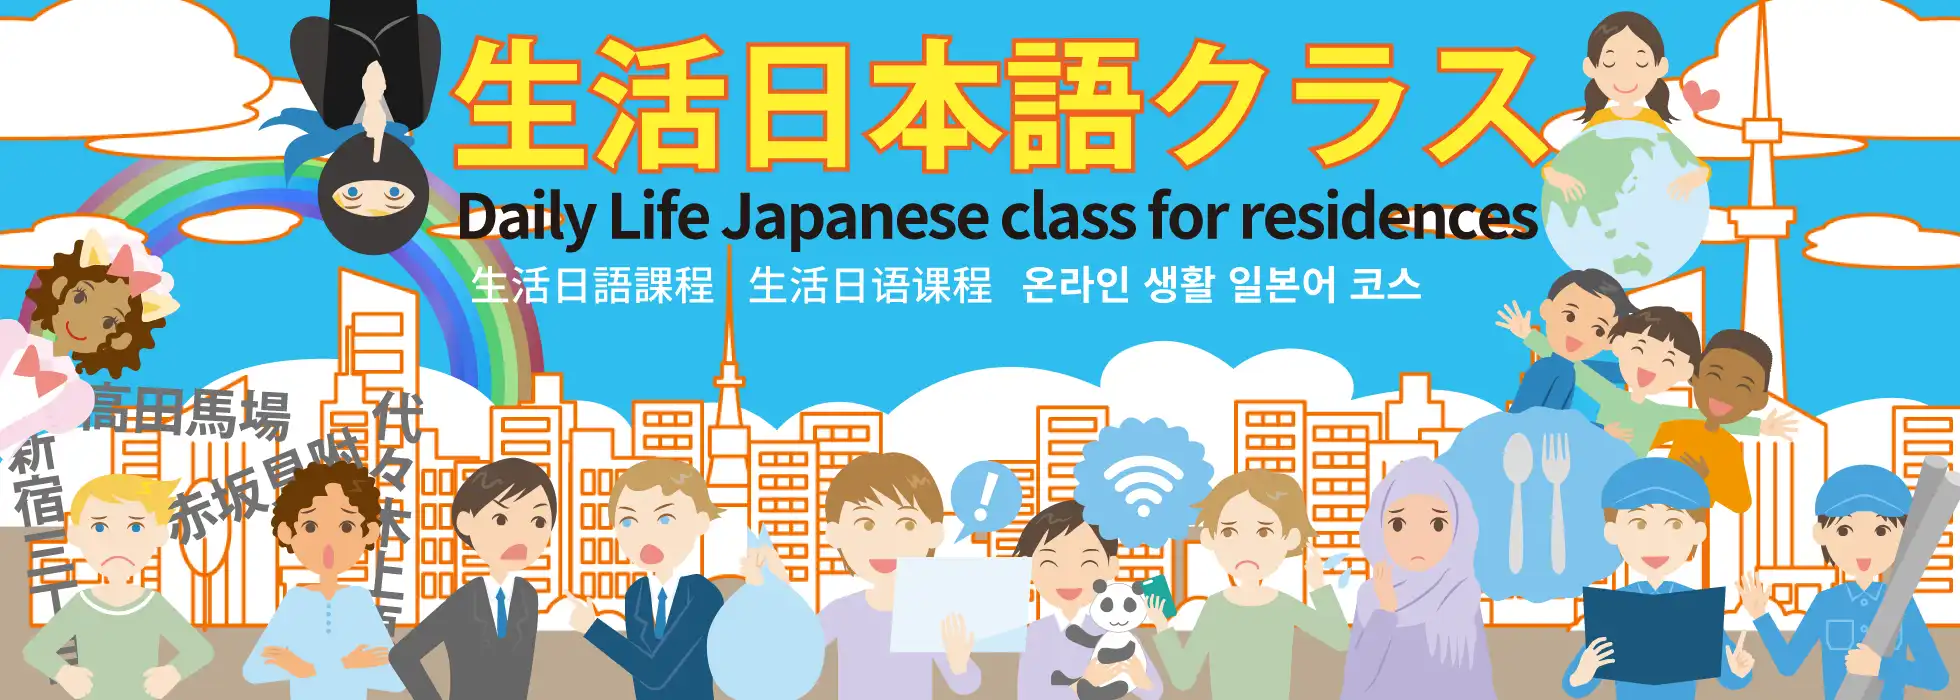 生活日語課程